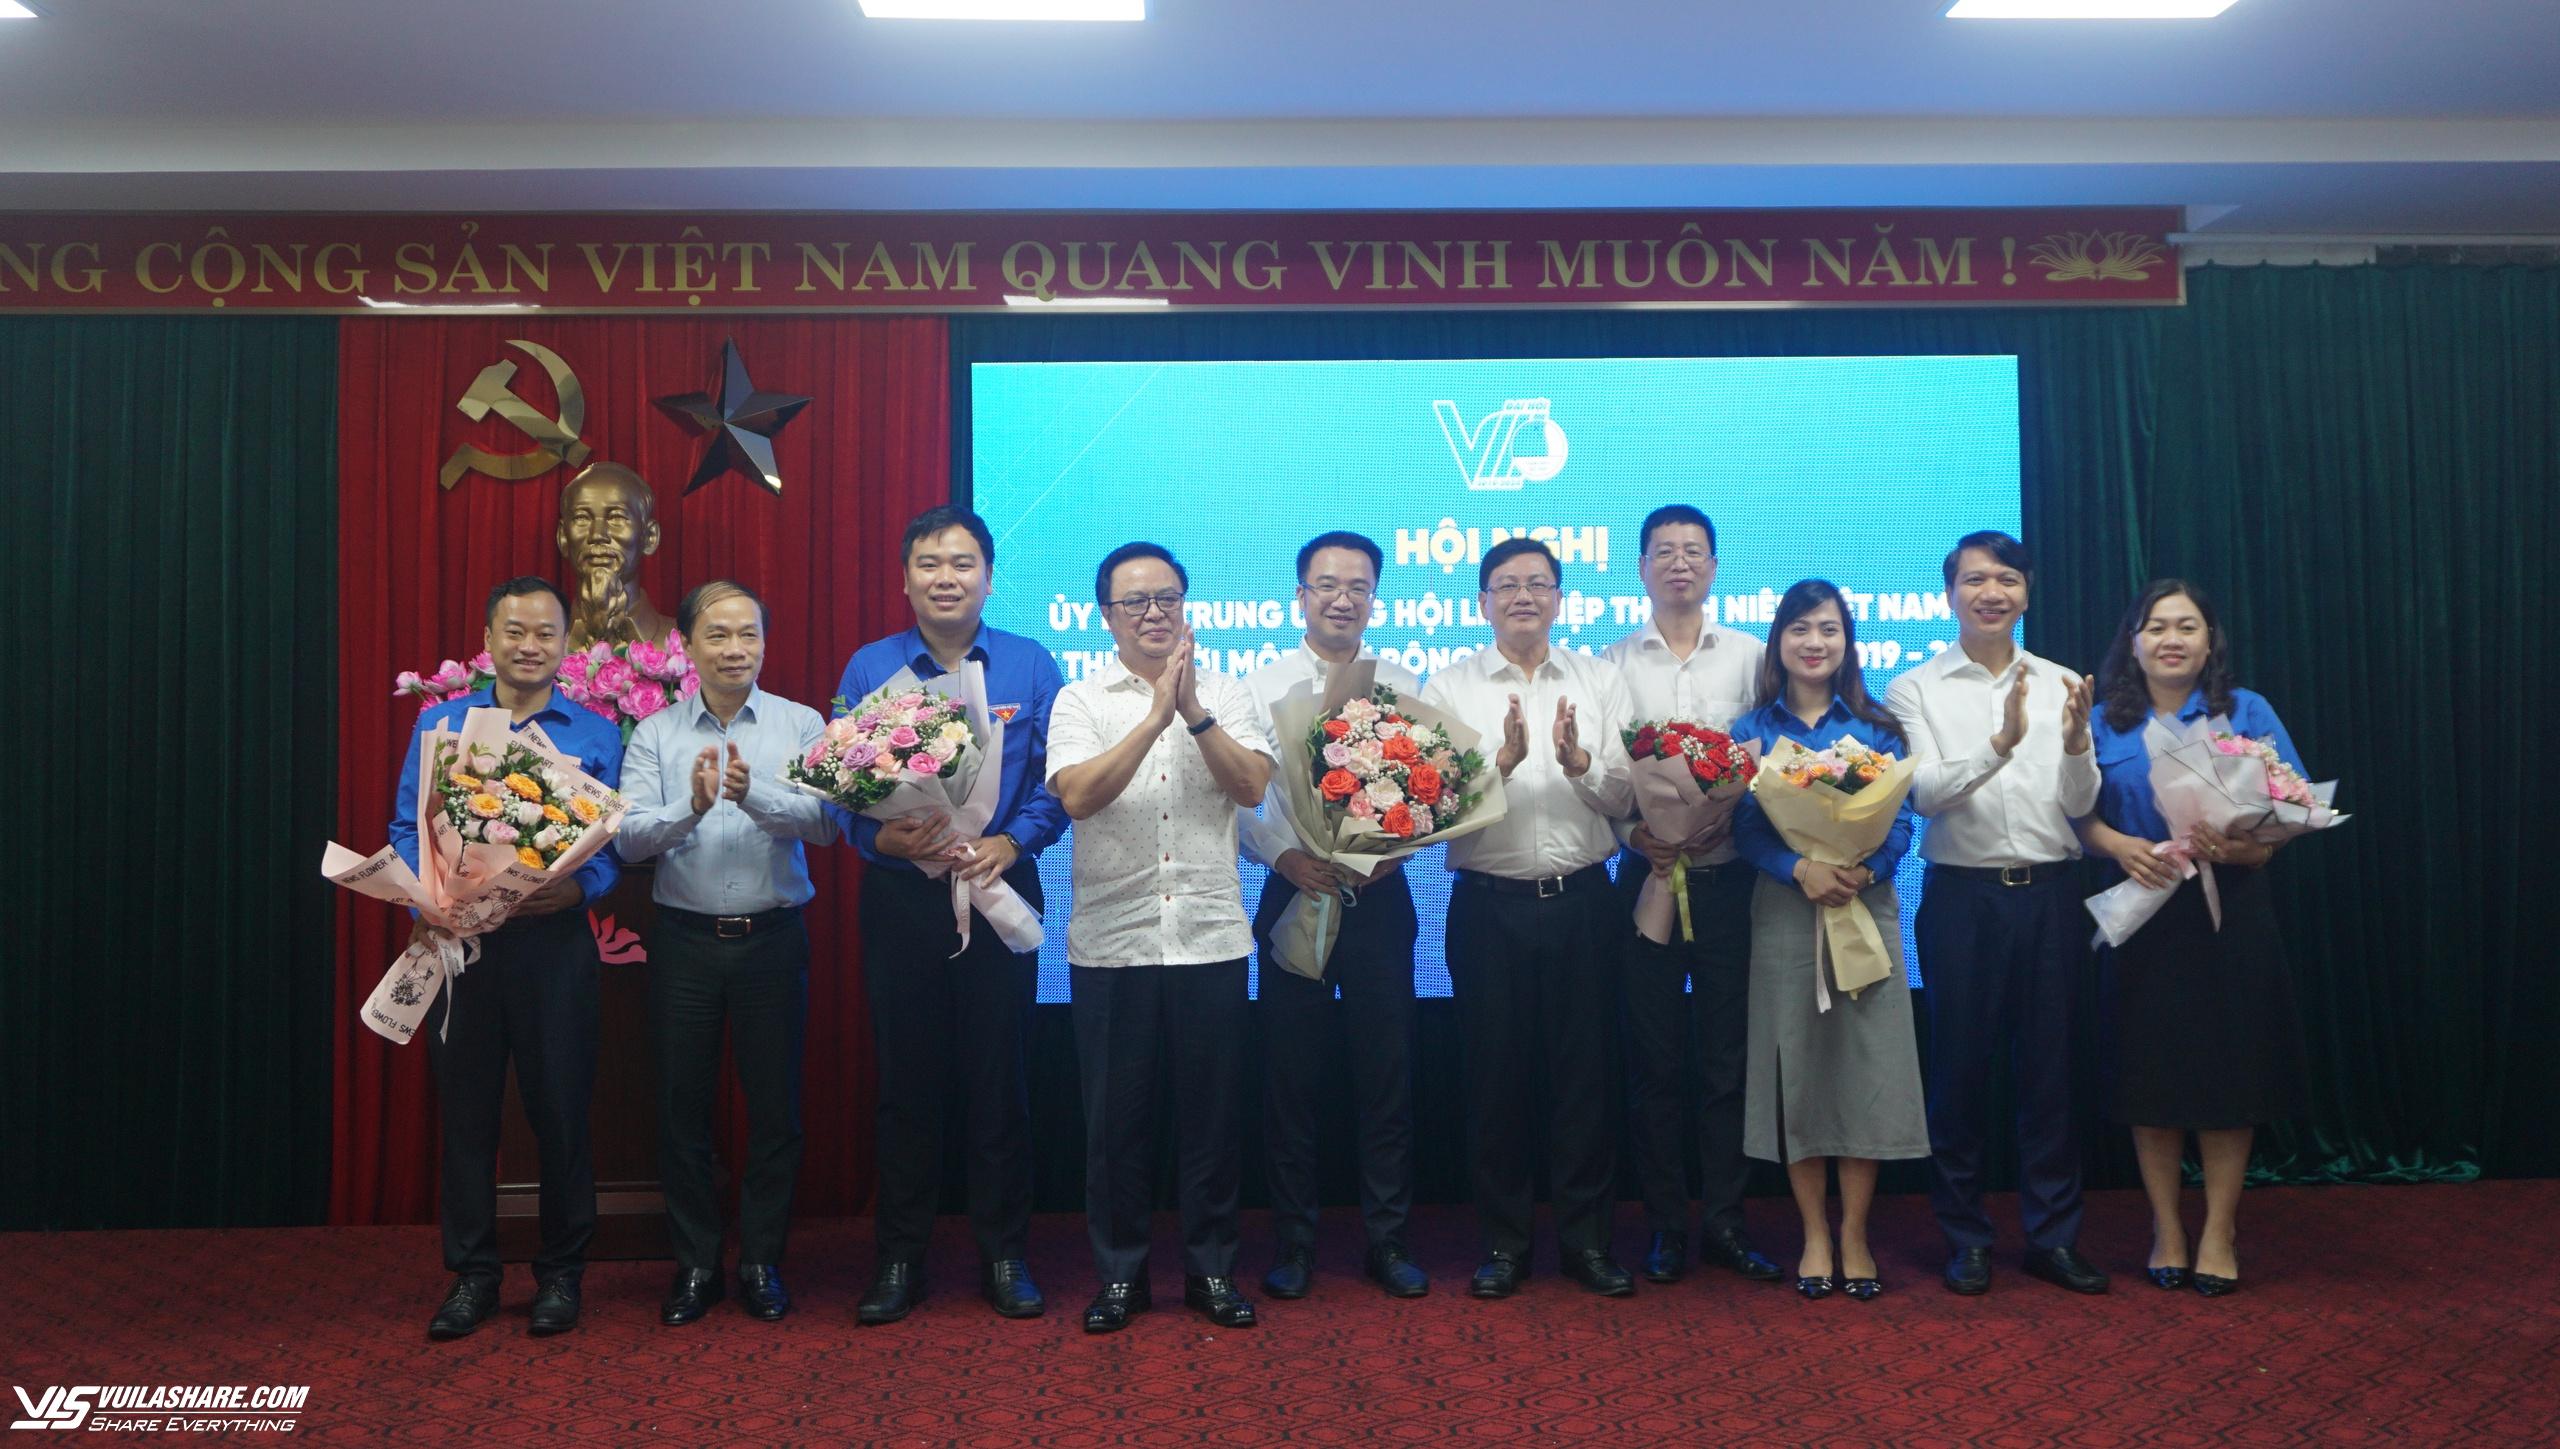 Hiệp thương bổ sung 3 Phó chủ tịch Hội Liên hiệp thanh niên Việt Nam- Ảnh 6.